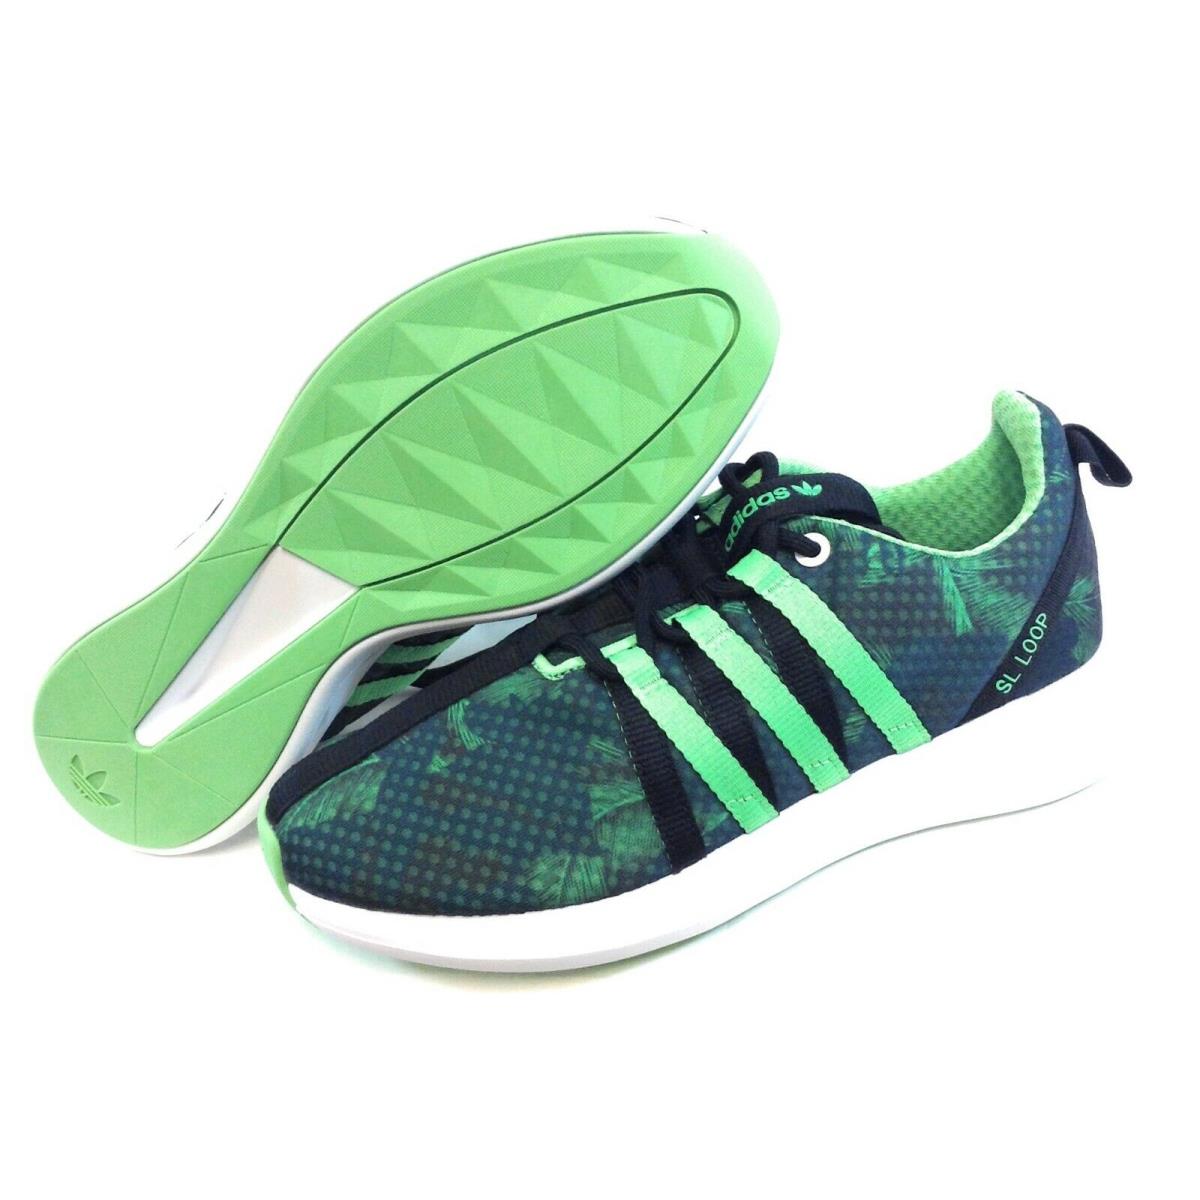 Womens Adidas SL Loop Racer C77537 Green Black 2015 Deadstock Sneakers Shoes